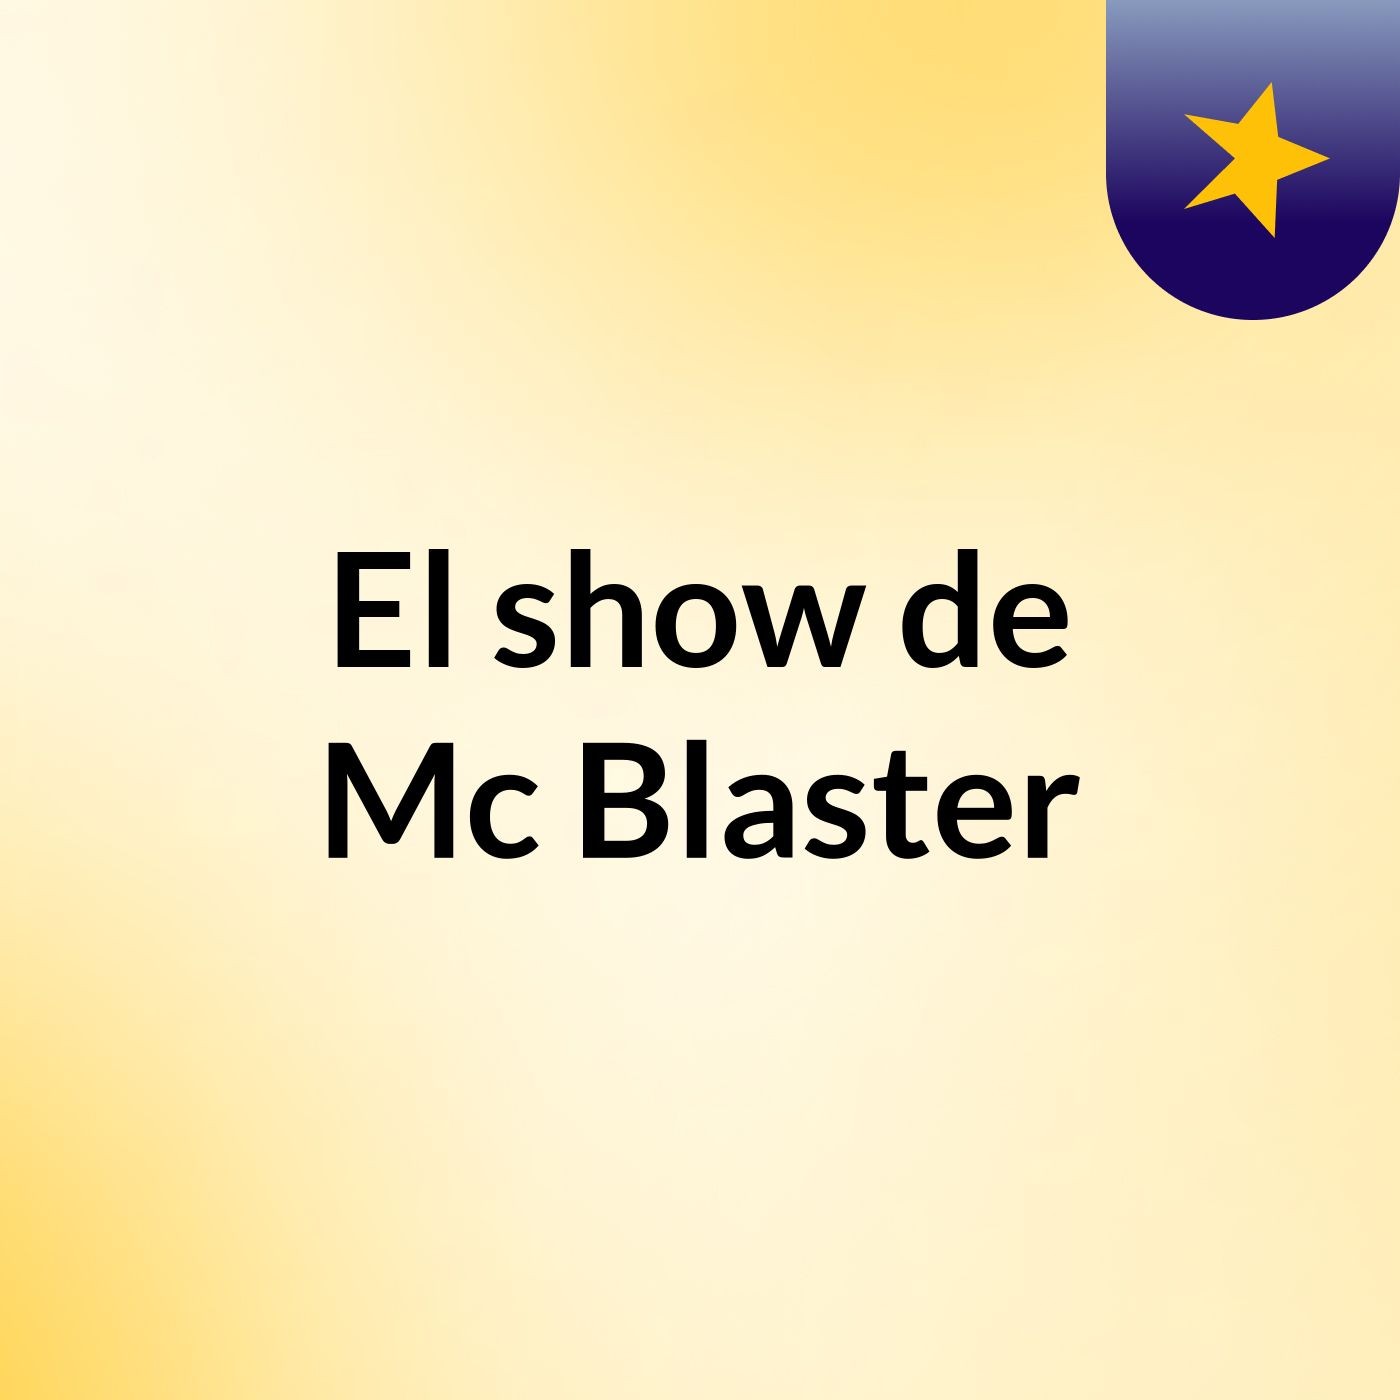 El show de Mc Blaster